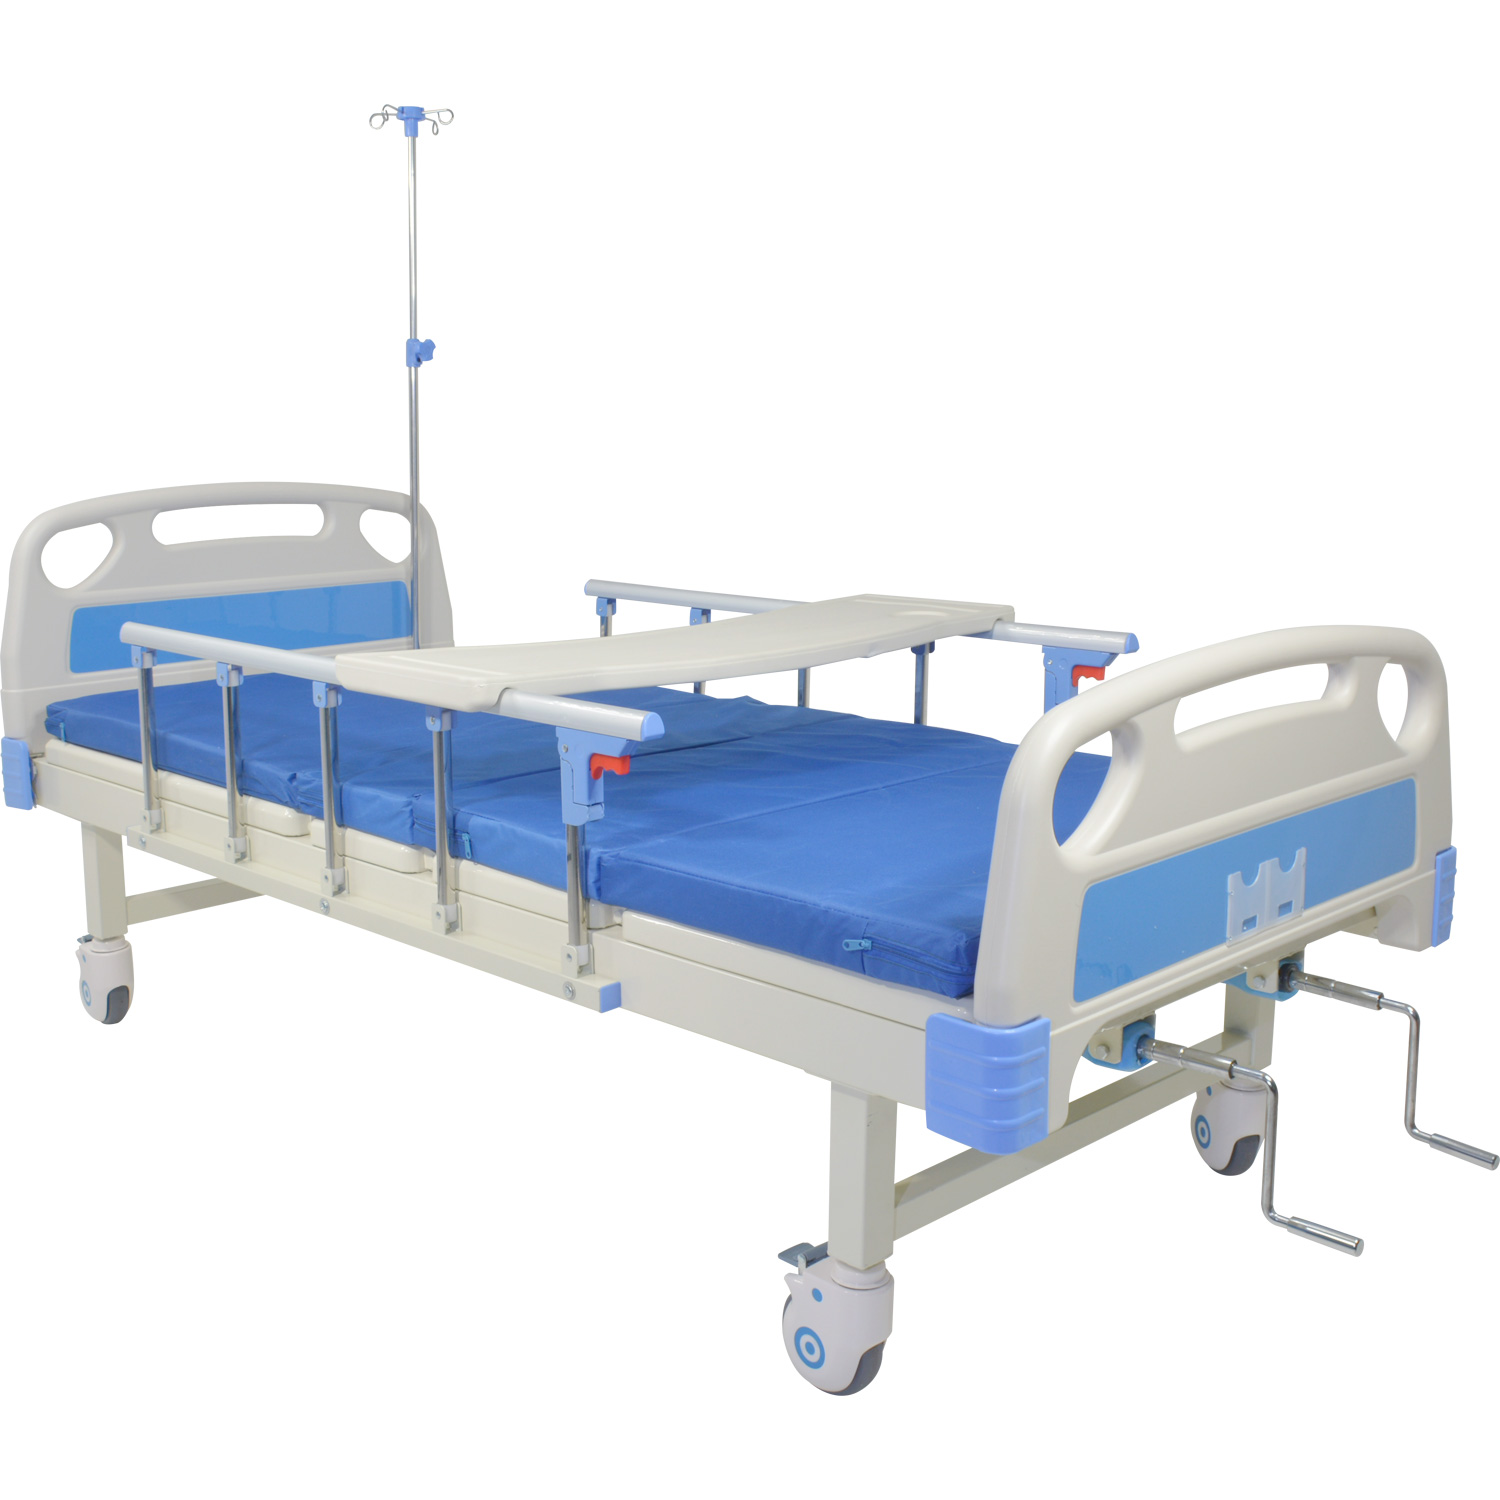 Cama Hospital Manual 2 Posiciones Barandales Aajustables 260kg Incluye Colchon Soporte Suero Hospitalaria